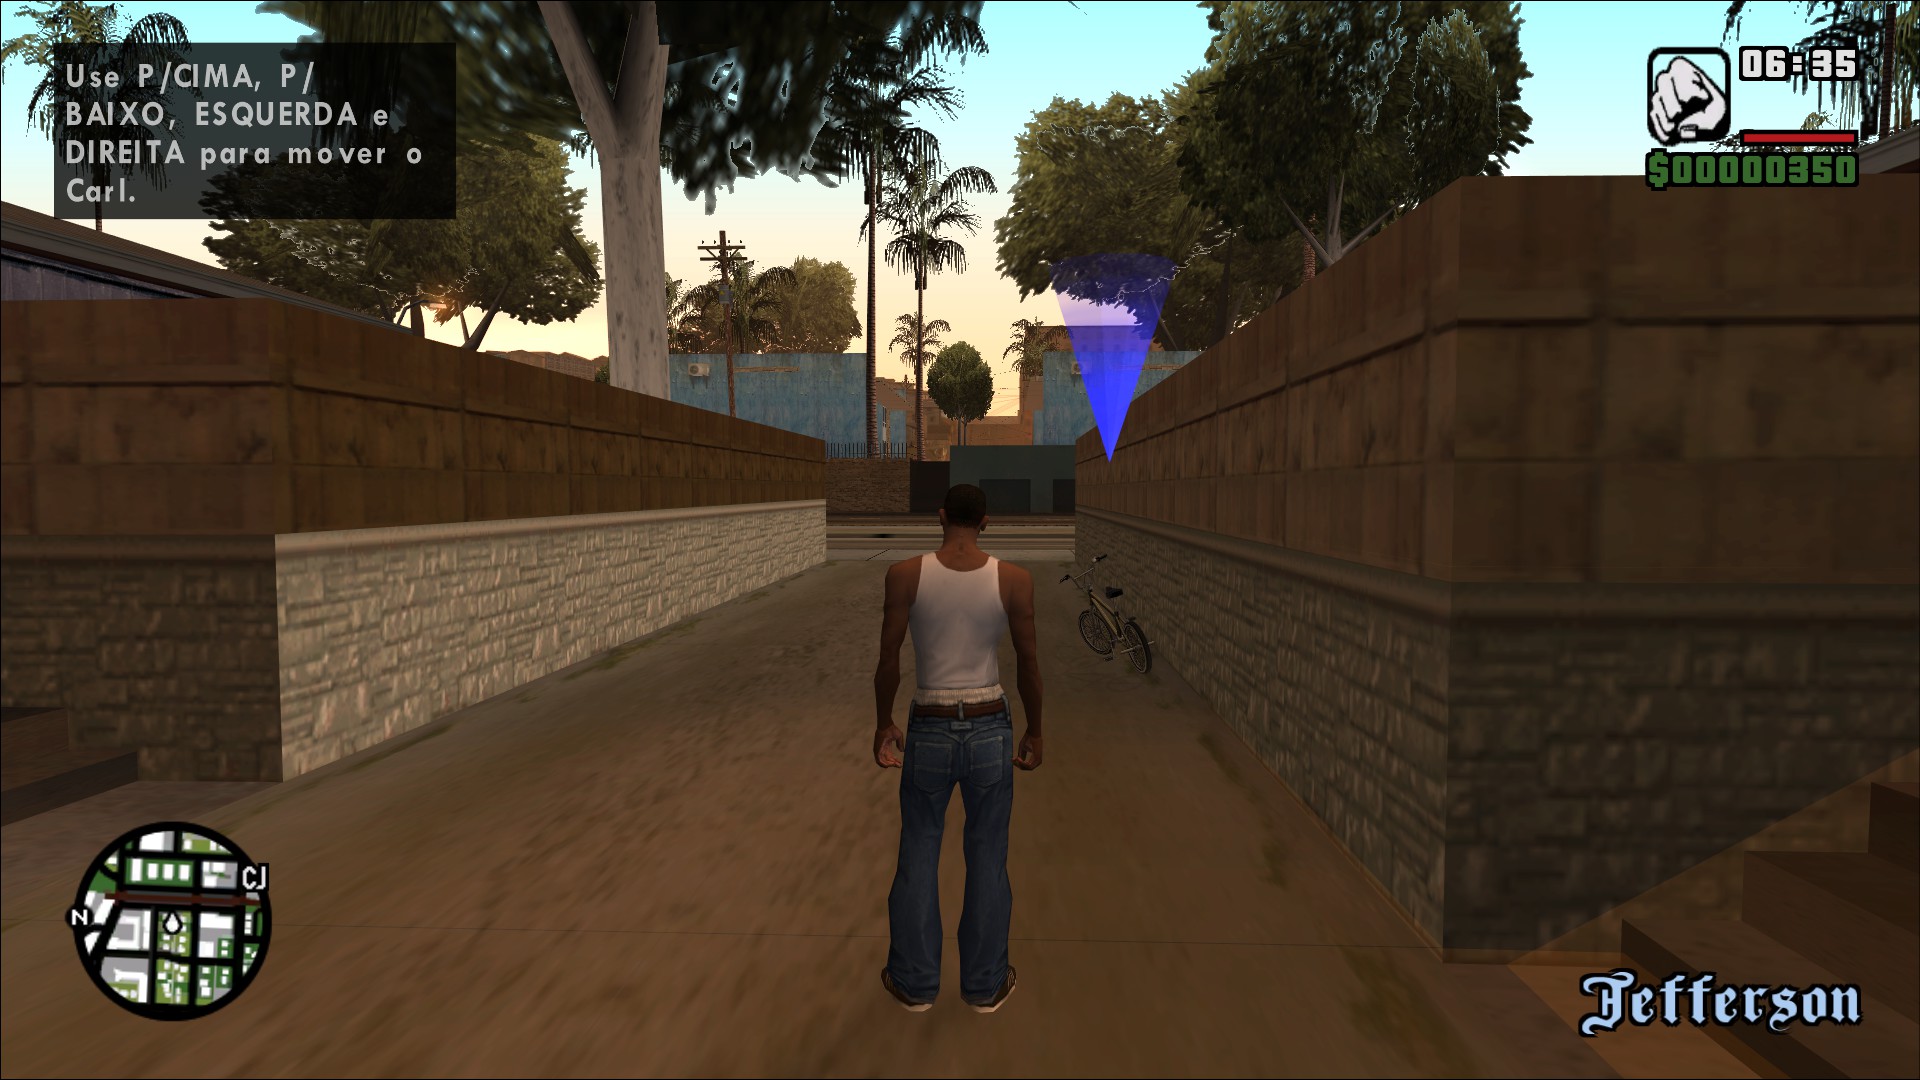 Como instalar mods em GTA San Andreas sem danificar o jogo